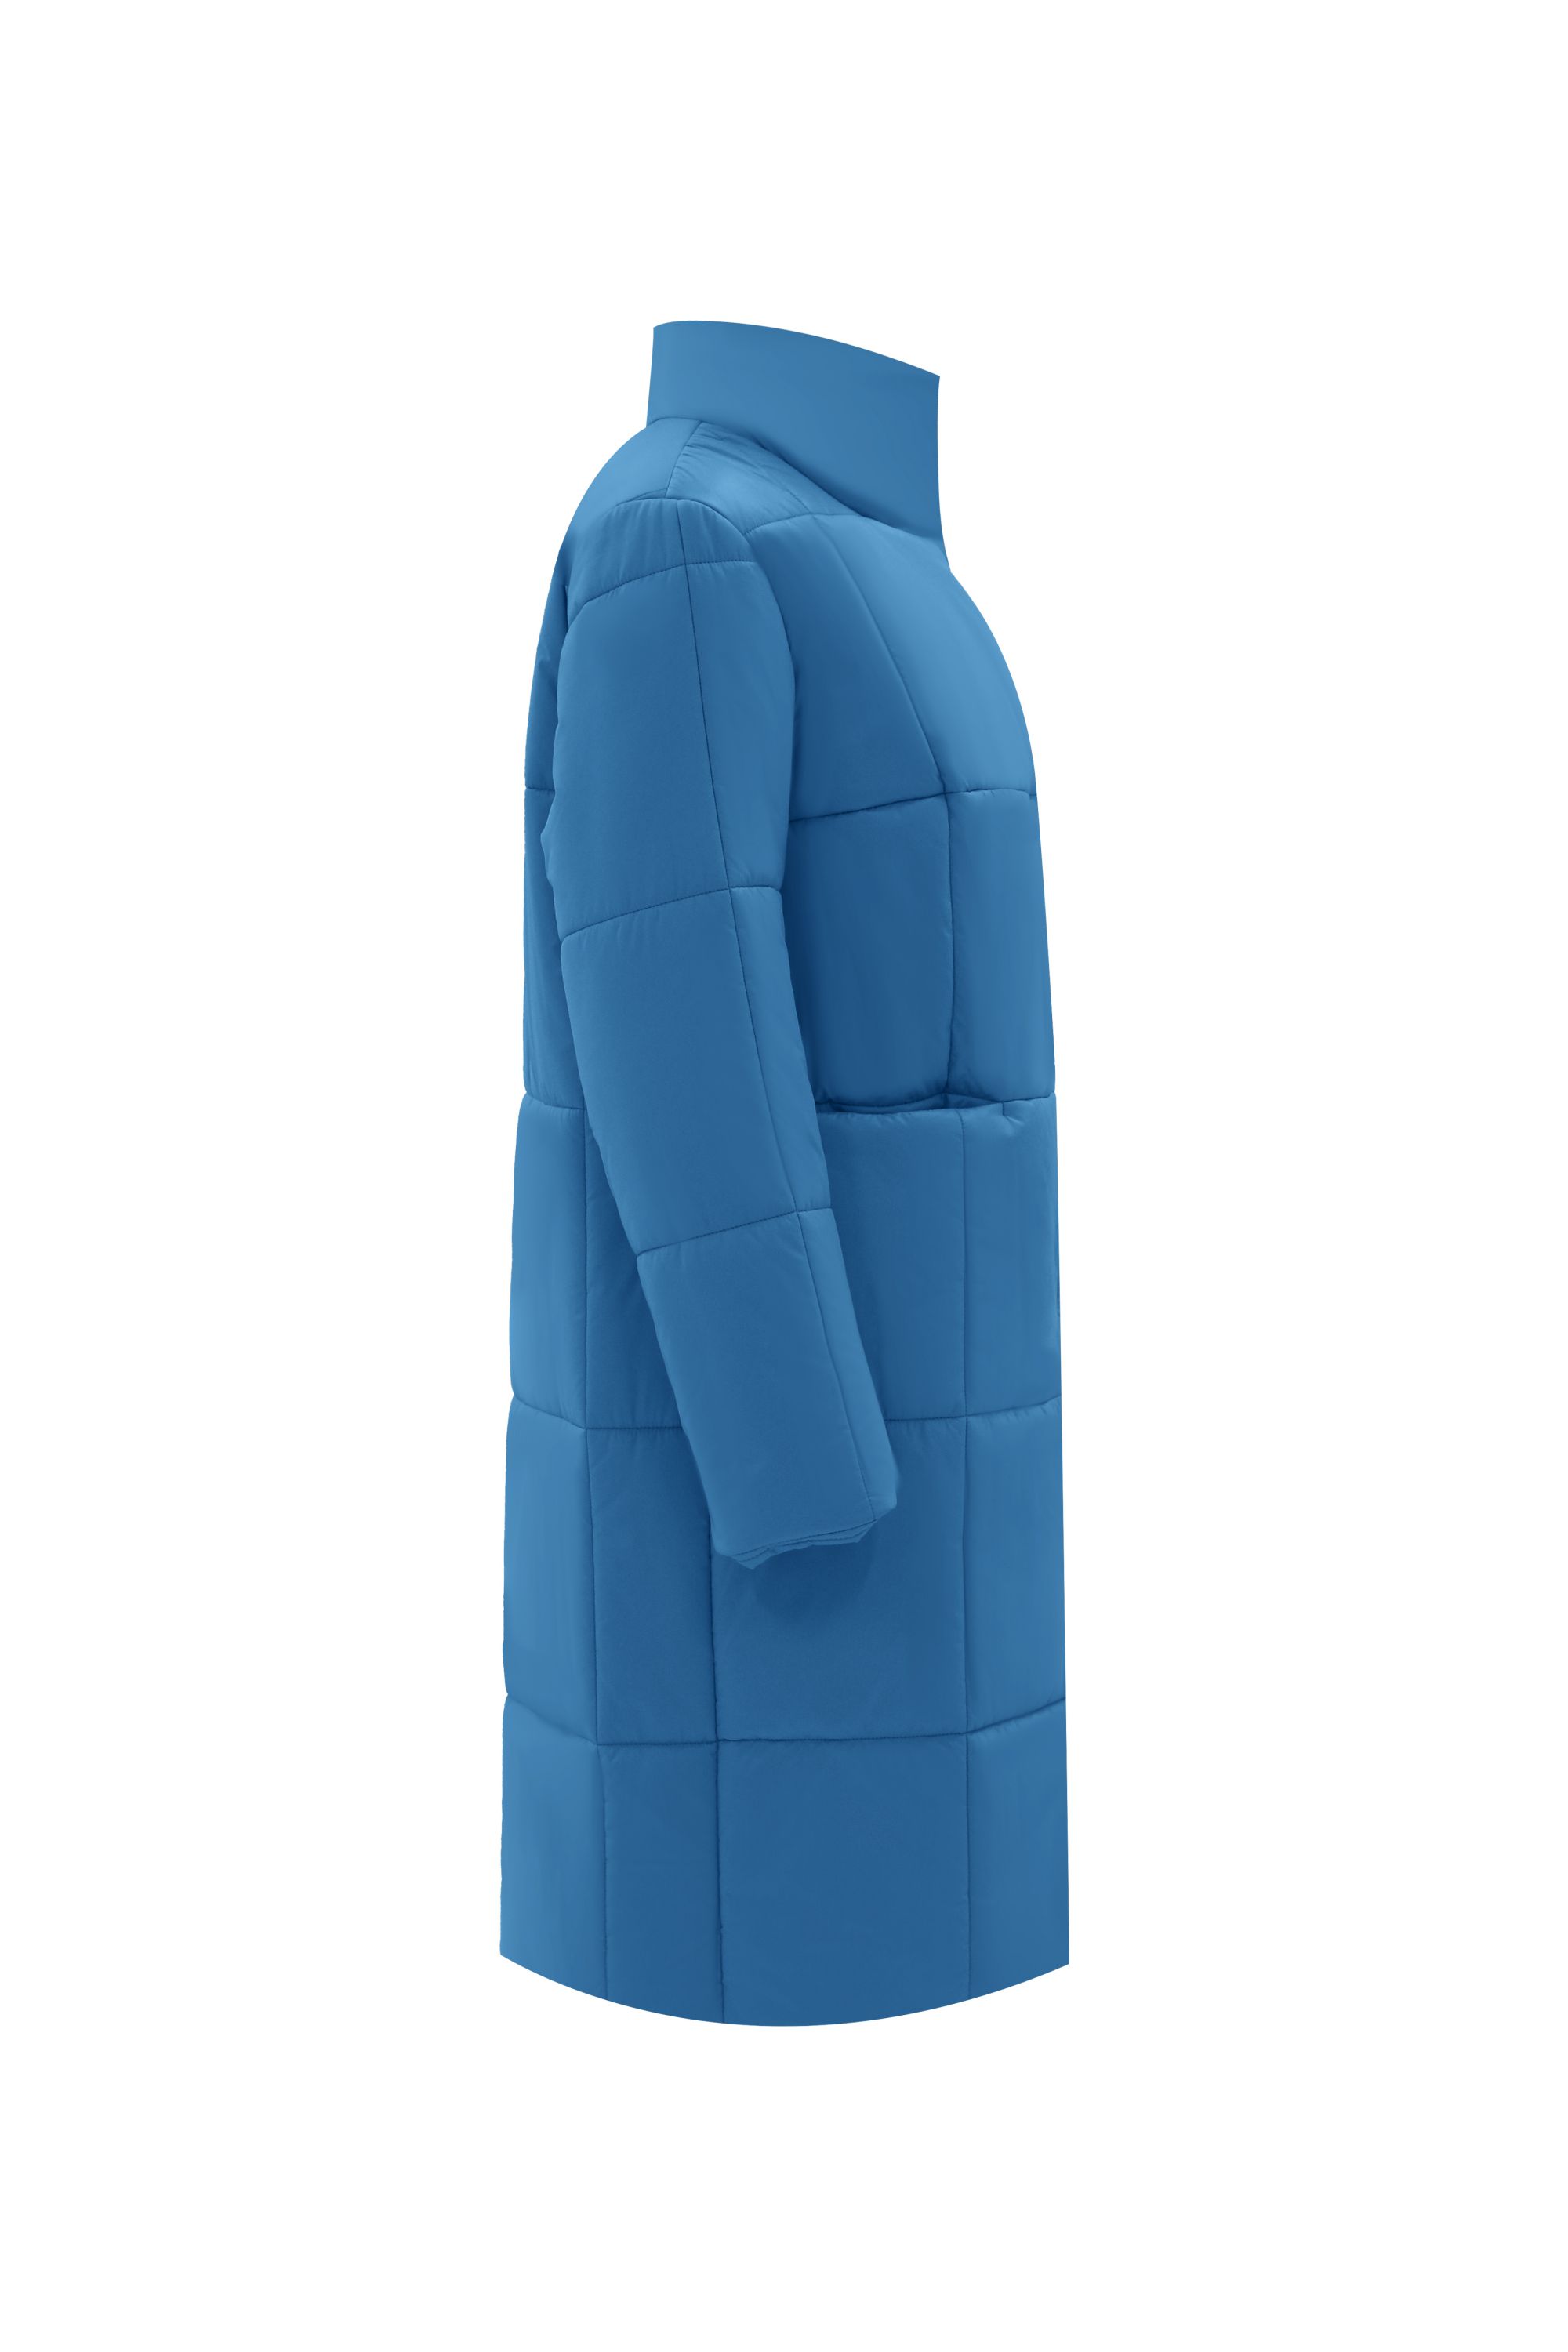 Пальто женское плащевое утепленное 5-12339-1